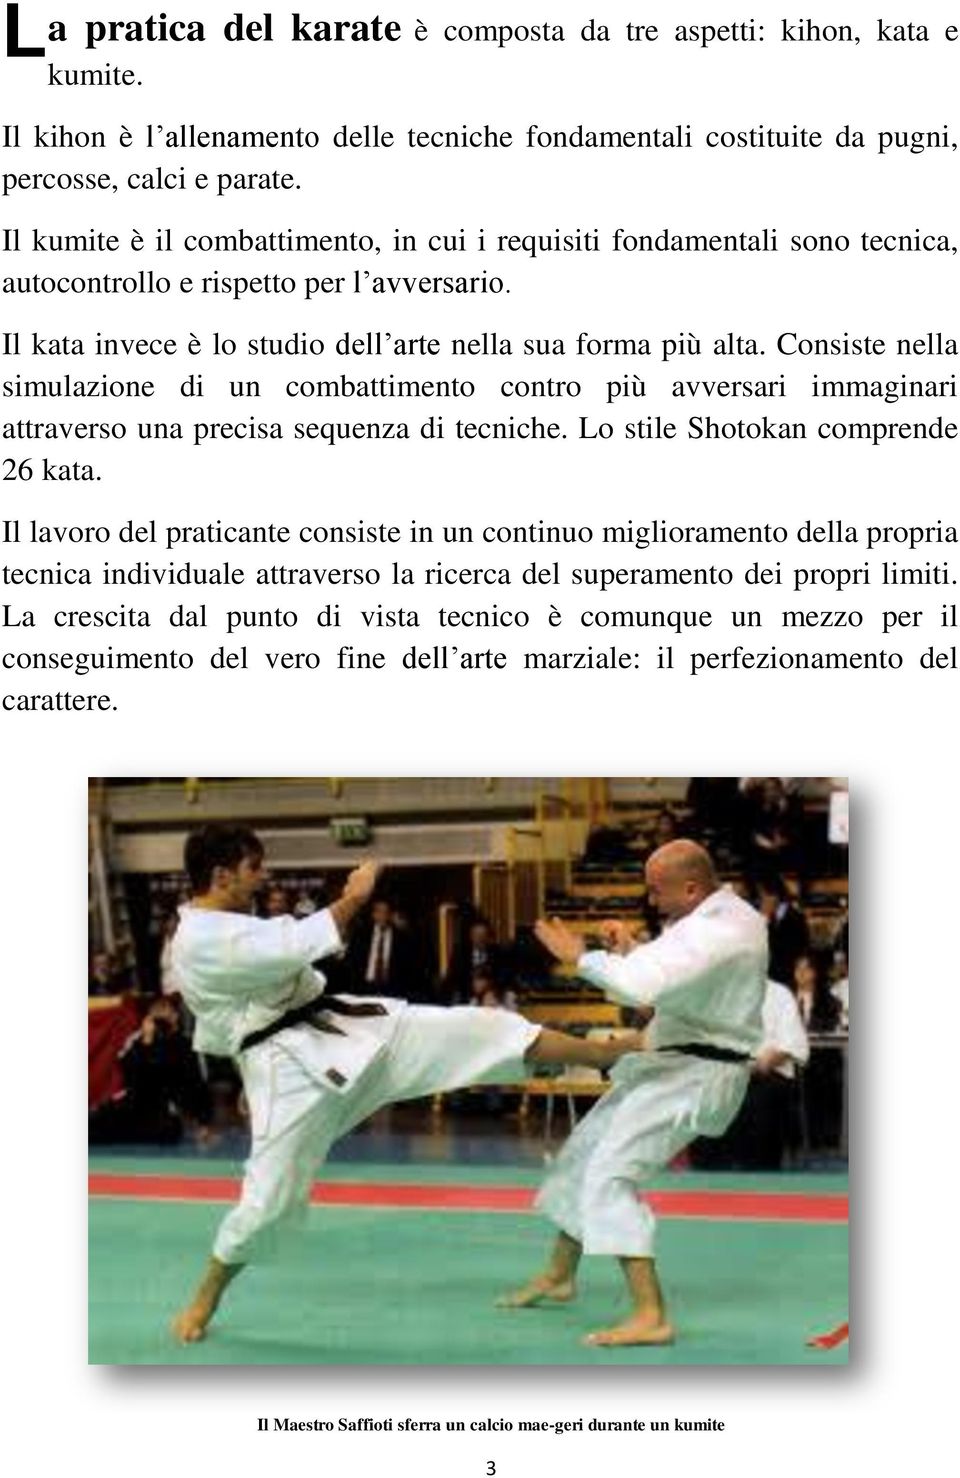 Consiste nella simulazione di un combattimento contro più avversari immaginari attraverso una precisa sequenza di tecniche. Lo stile Shotokan comprende 26 kata.